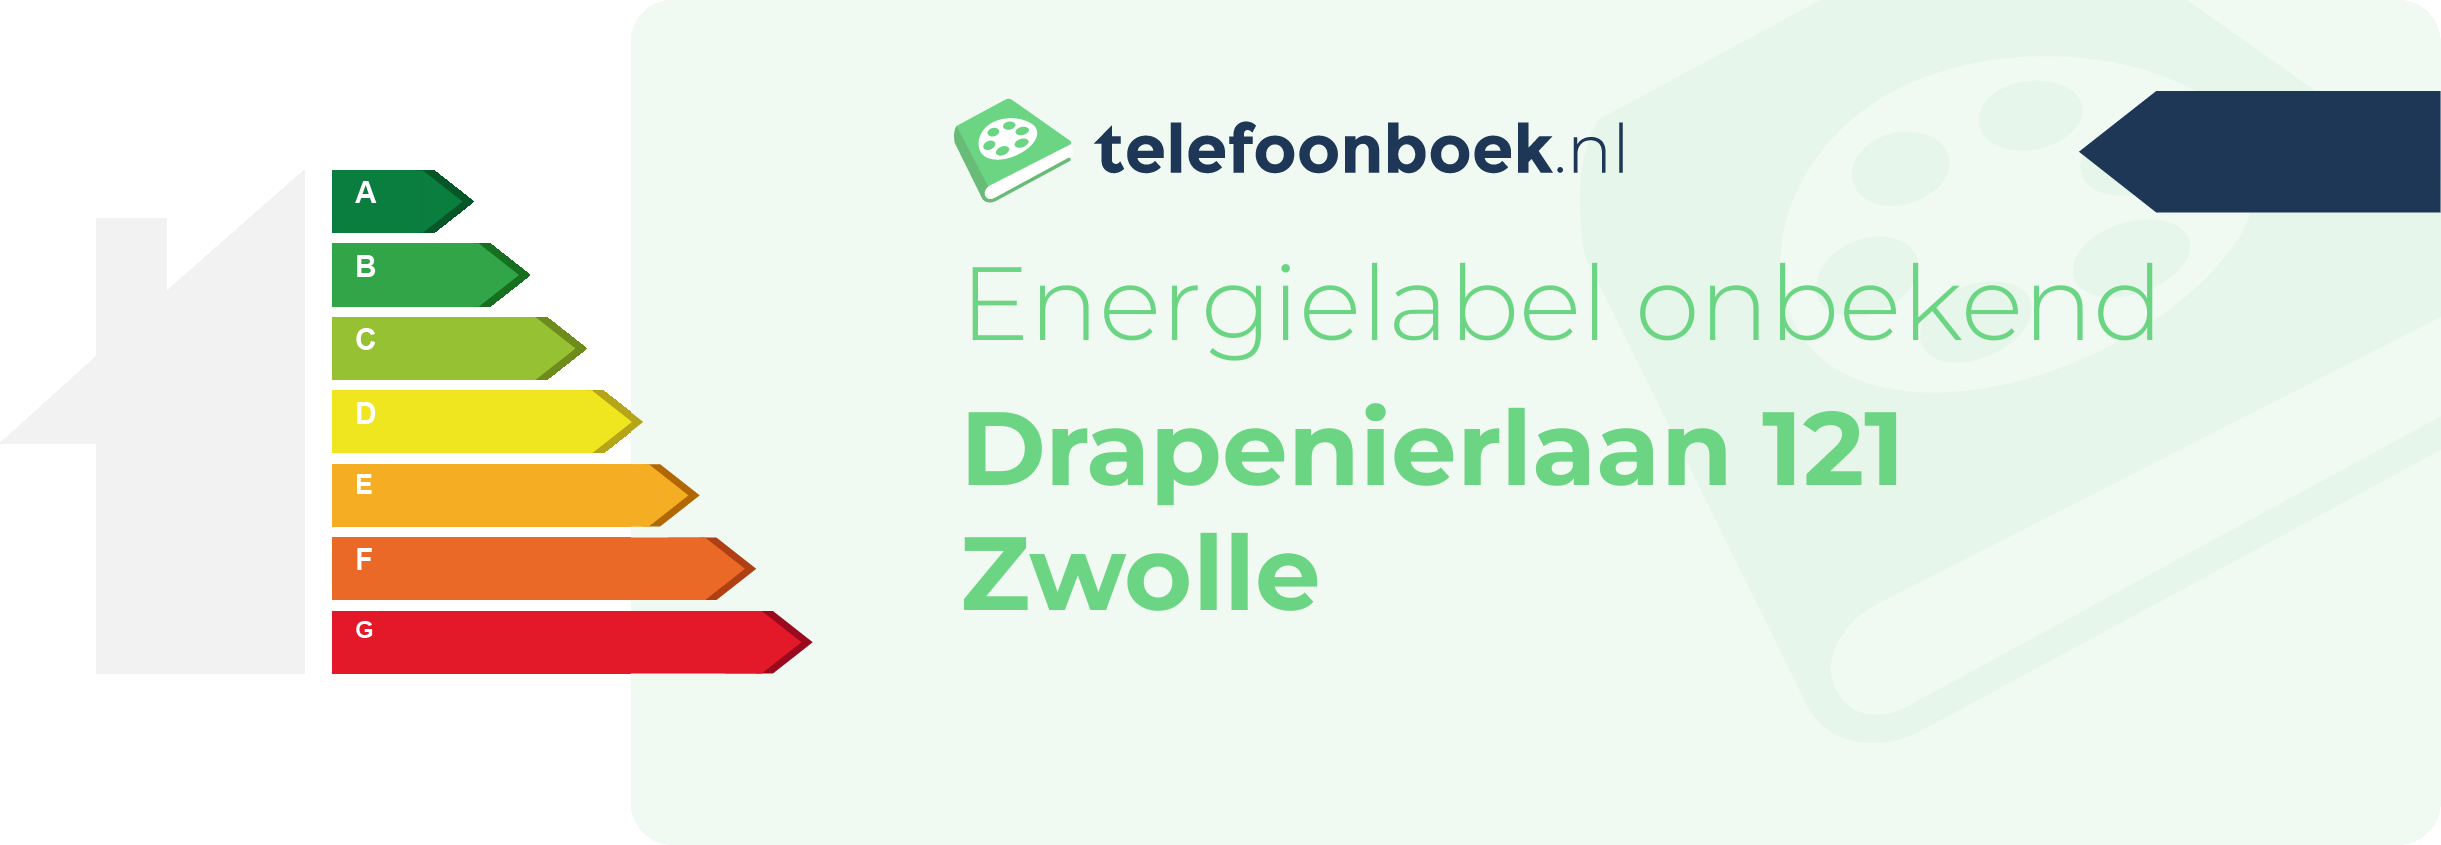 Energielabel Drapenierlaan 121 Zwolle